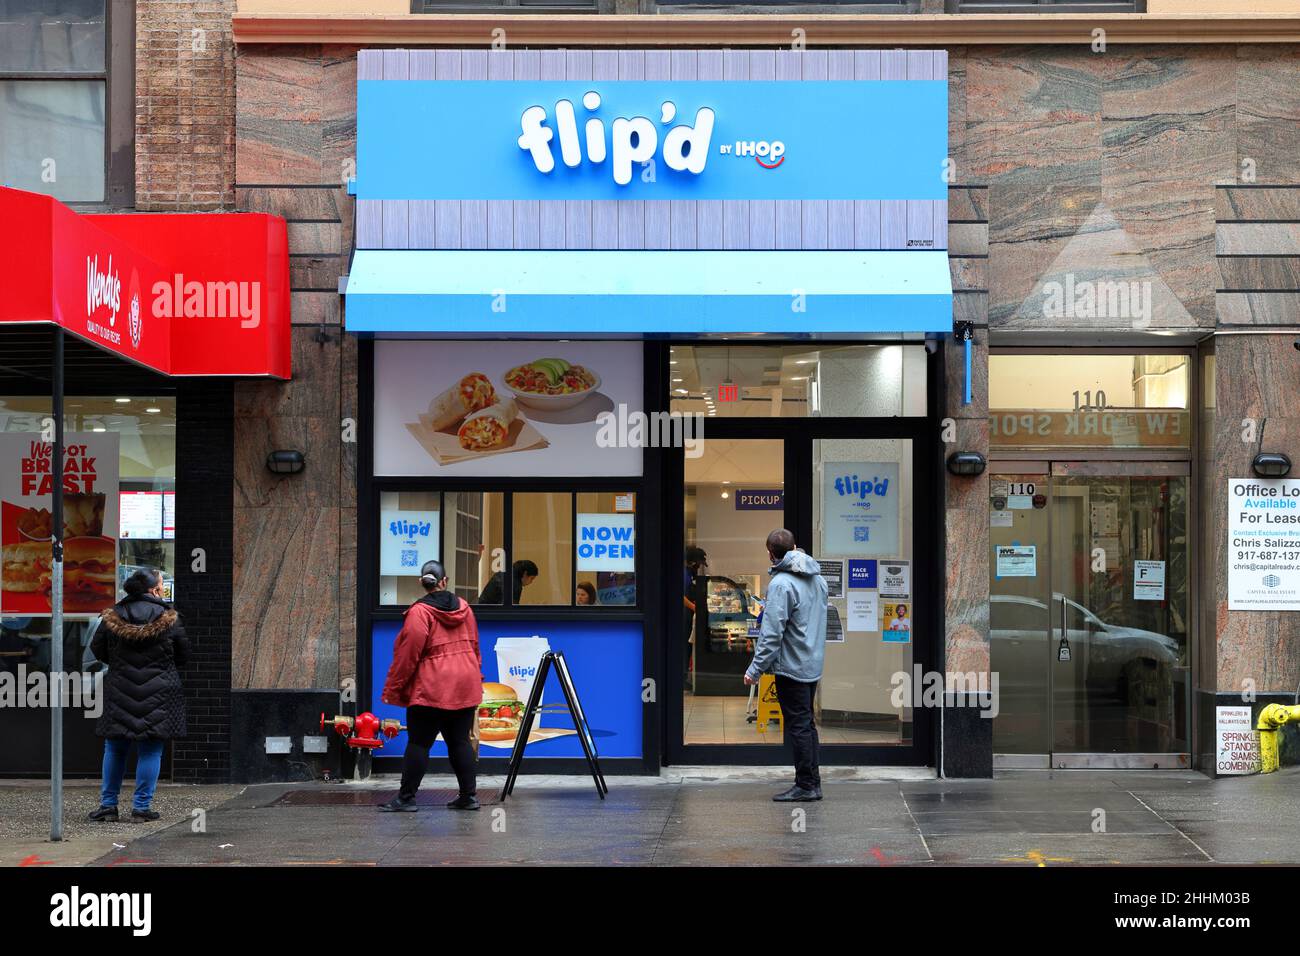 Flip'd by IHOP, 110 E 23. St, New York, NYC Foto von einem Fast-Food-Restaurant im Stadtteil Gramercy von Manhattan. Stockfoto